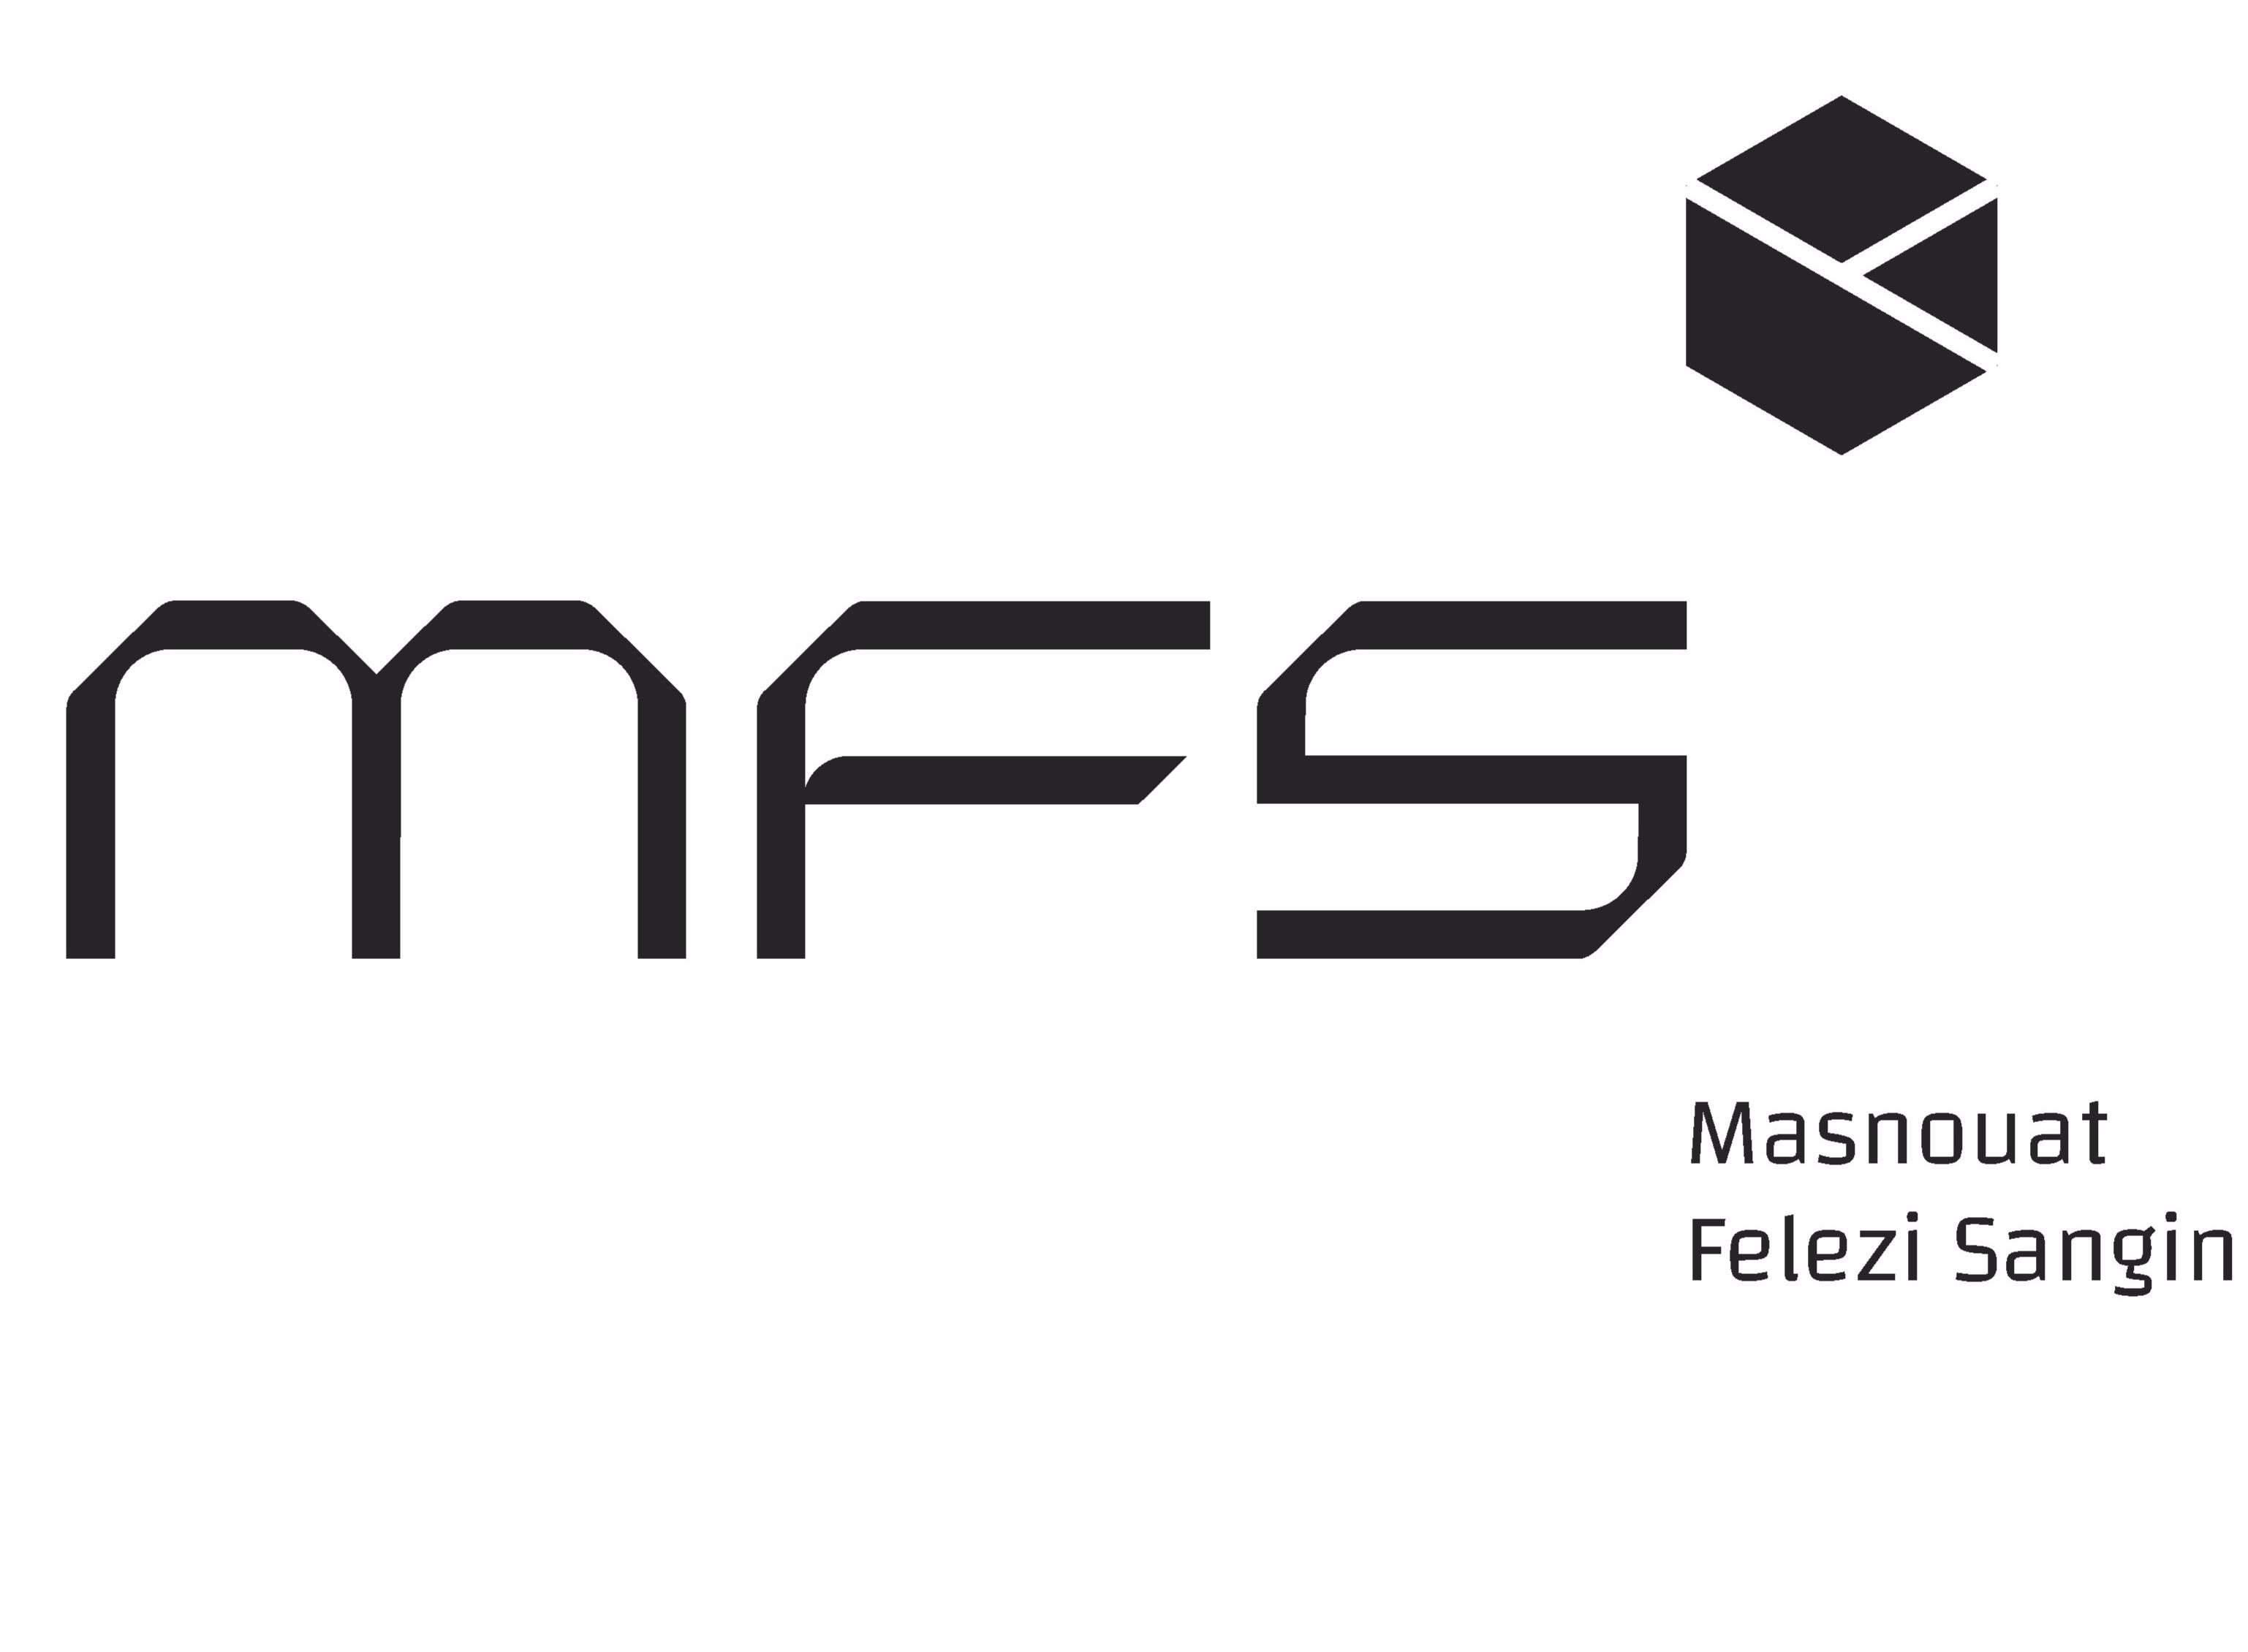 مدیر دفتر و اداری | Administration Manager - مصنوعات فلزی سنگین | Masnouat Felezi Sangin (MFS)